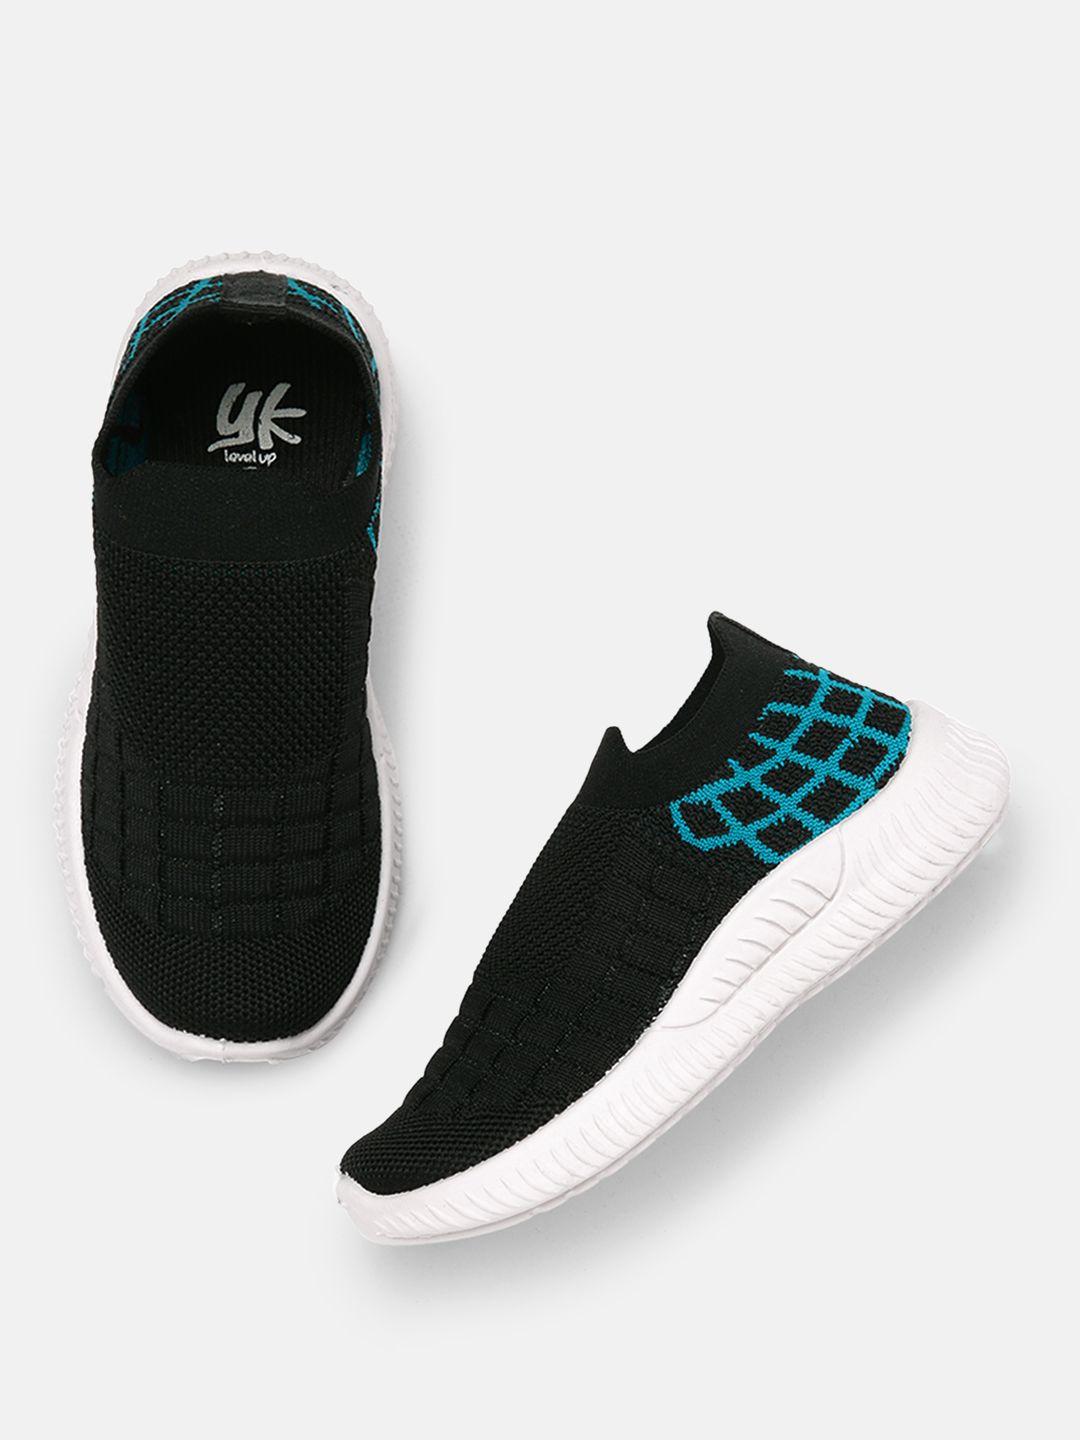 yk-boys-black-&-blue-printed-slip-on-sneakers